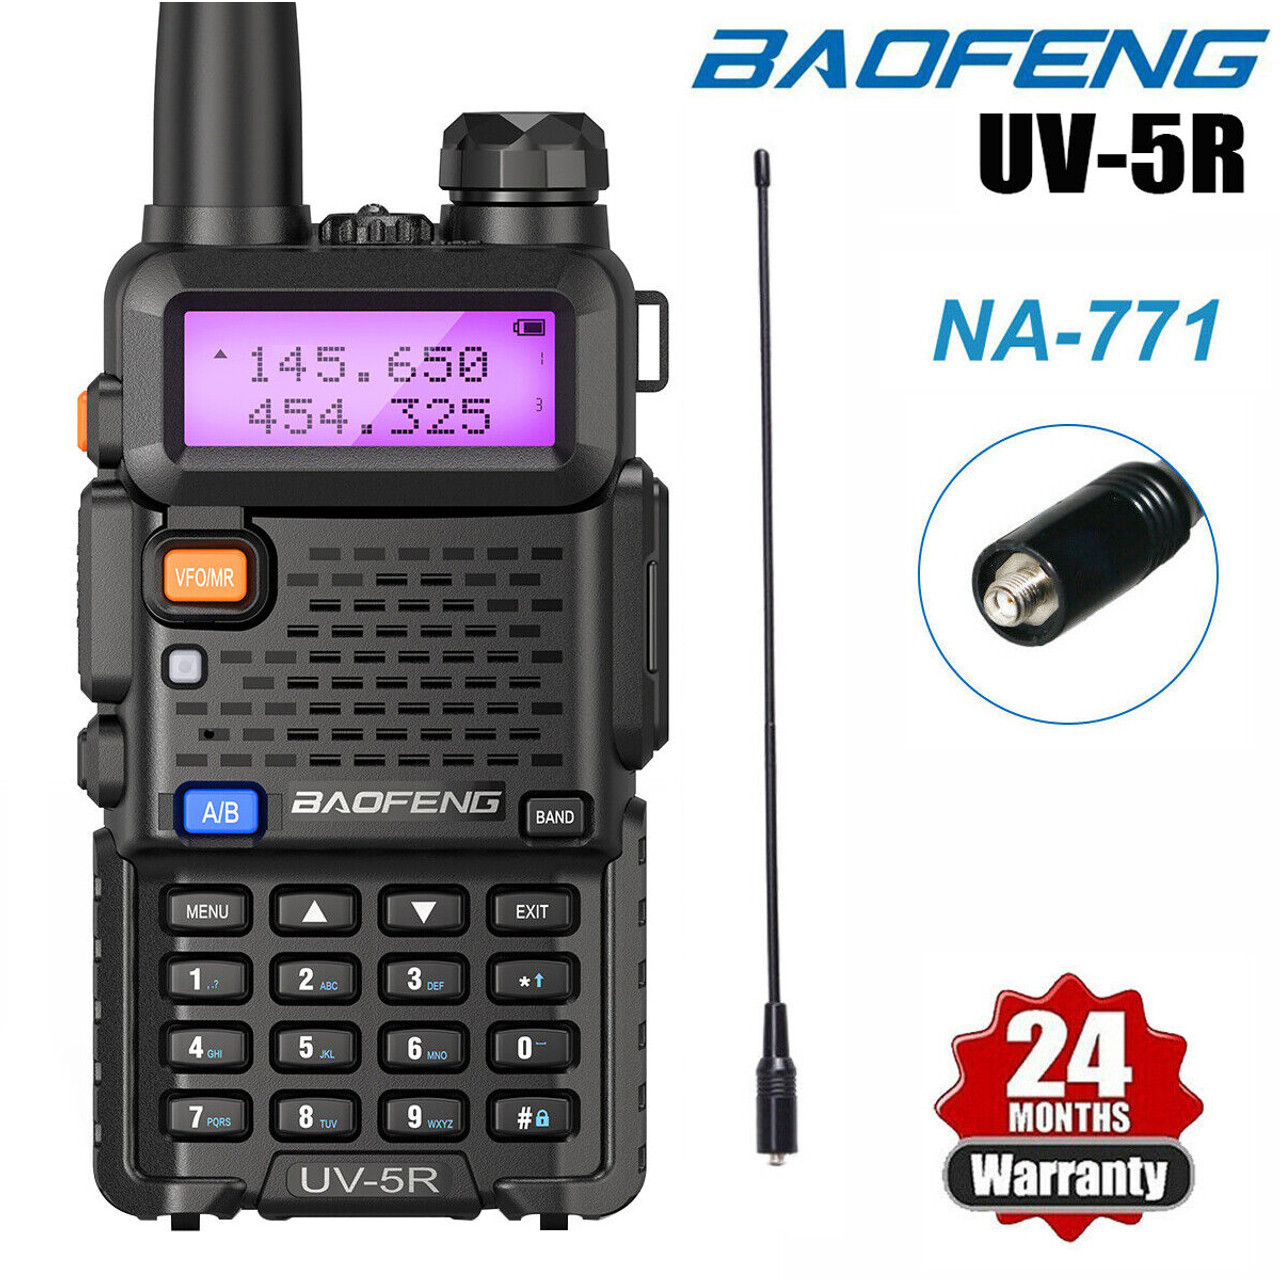 BAOFENG Radio BAOFENG UV-5R Dual Band VHF/UHF Walkie Talkies Two Way Radio  NA-771 Antenna